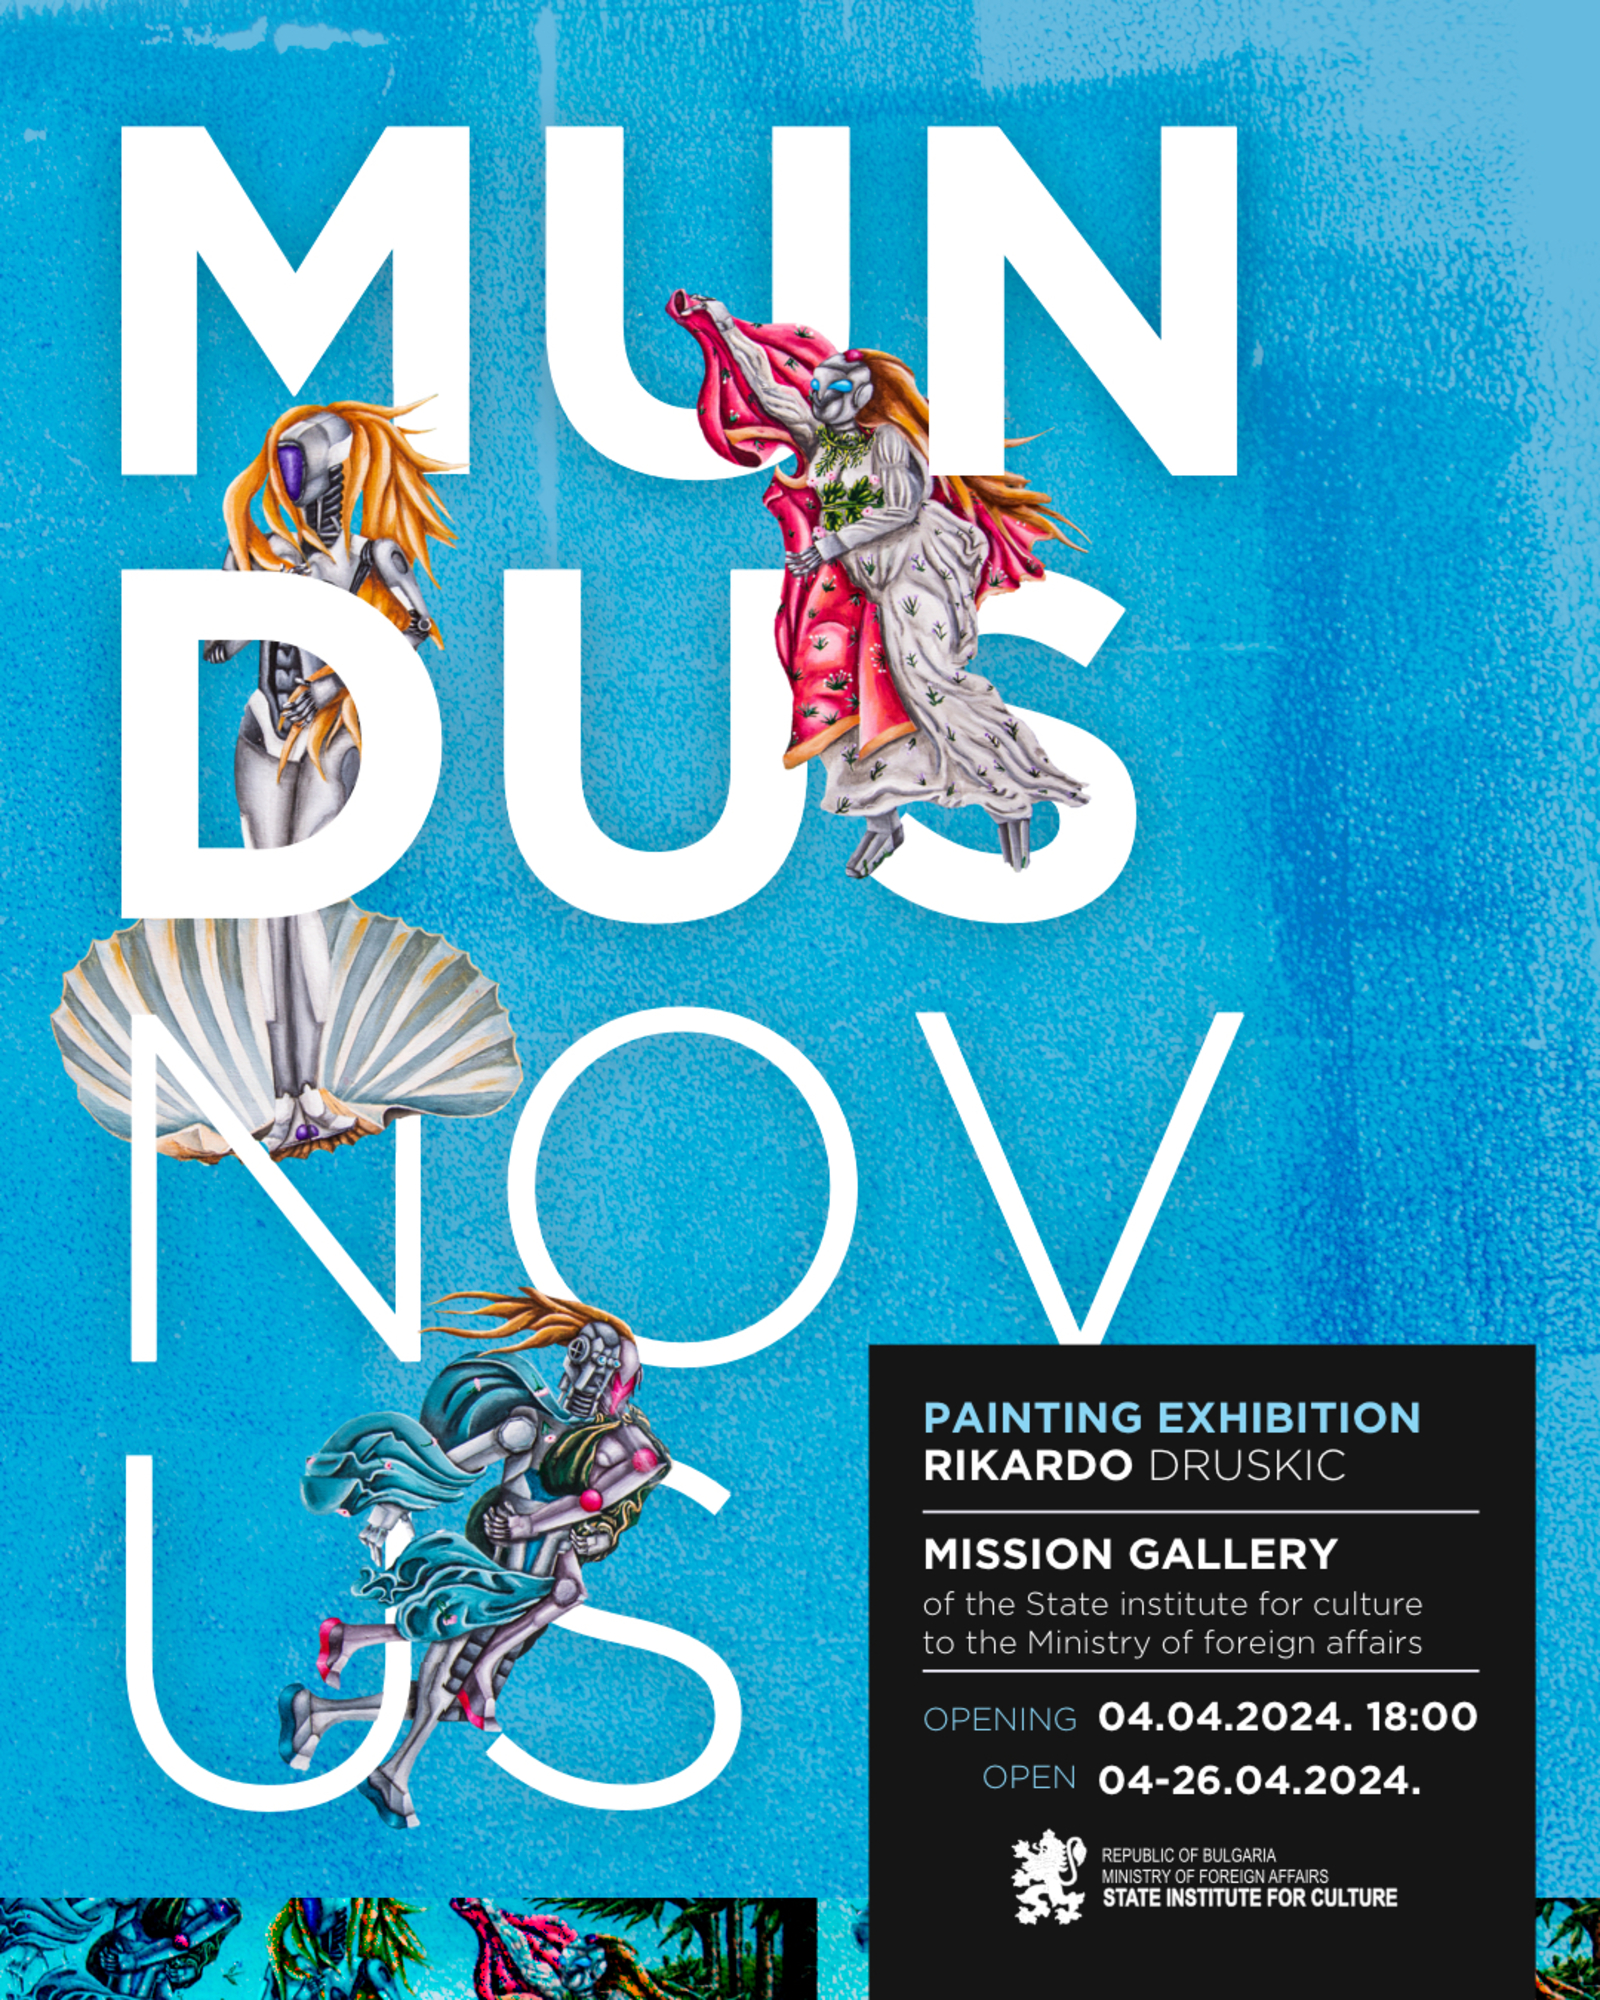 Exhibition “Mundus Novus” by Rikardo Druškić will Open at the Mission Gallery